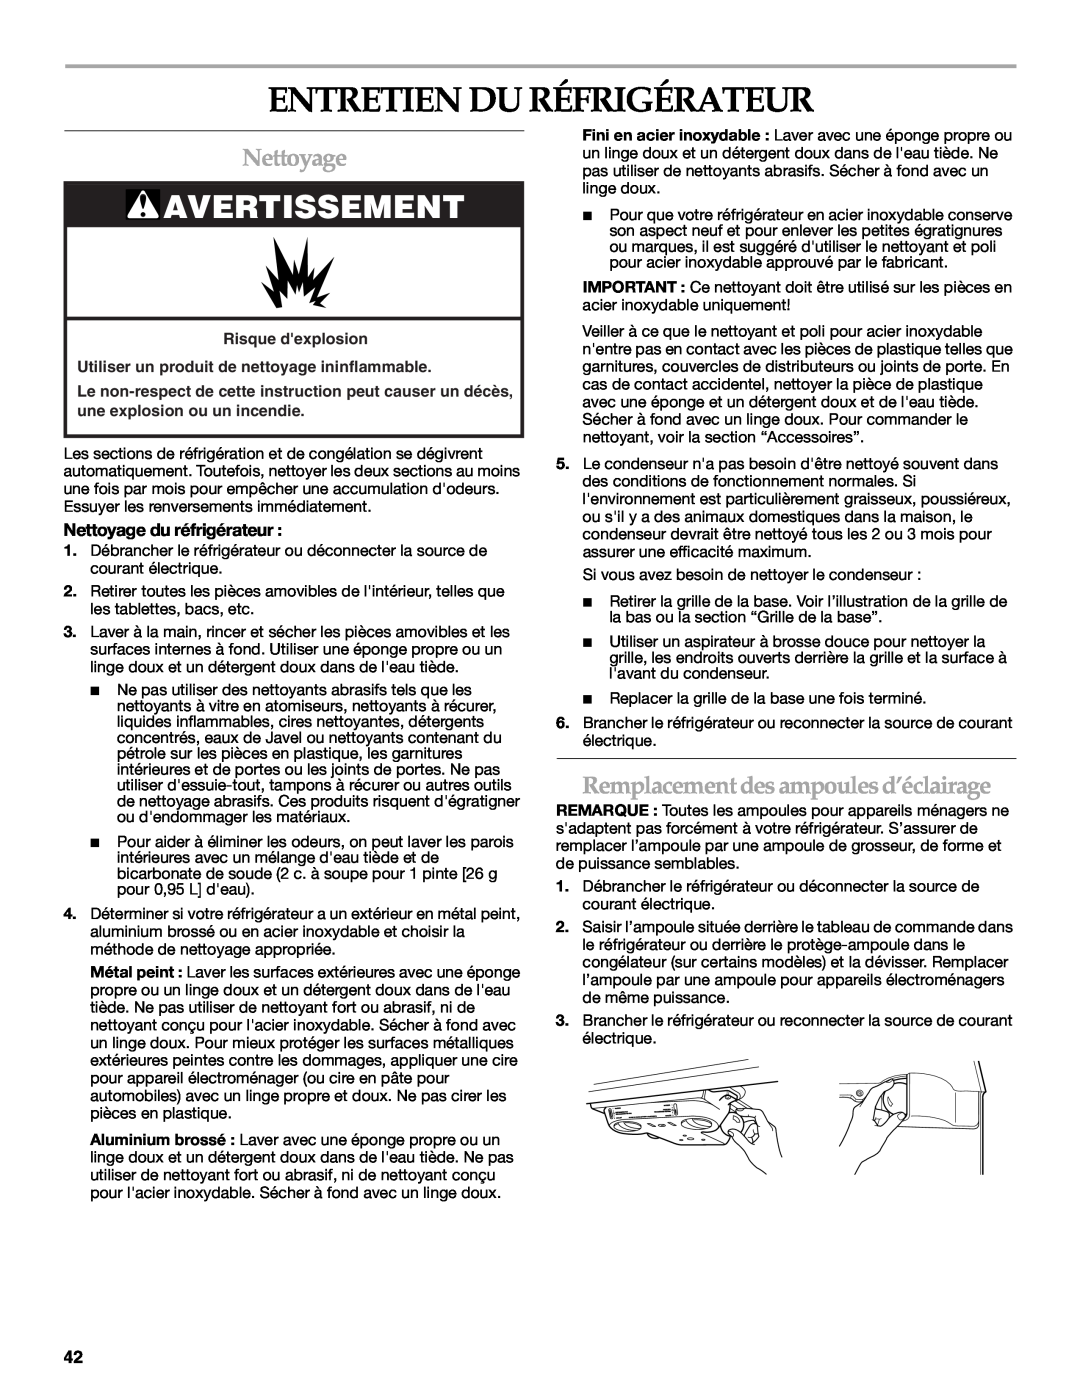 KitchenAid TOP-MOUNT REFRIGERATOR manual Entretien Du Réfrigérateur, Nettoyage, Remplacement des ampoulesd’éclairage 